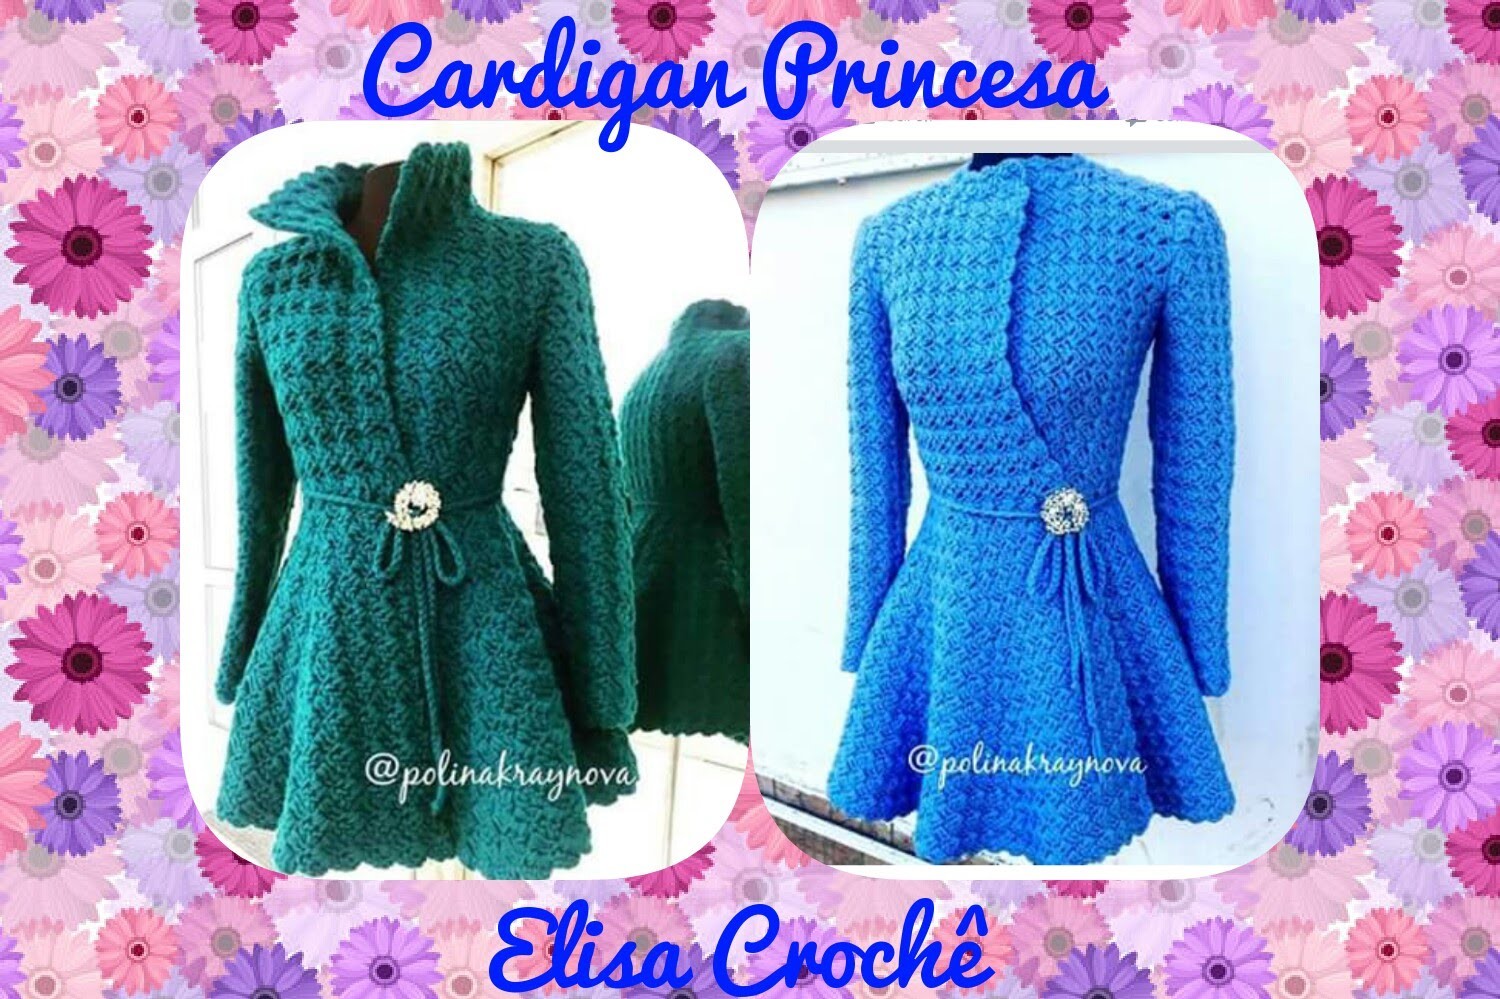 Cardigan princesa em crochê ( 4ª parte final ) # Elisa Crochê